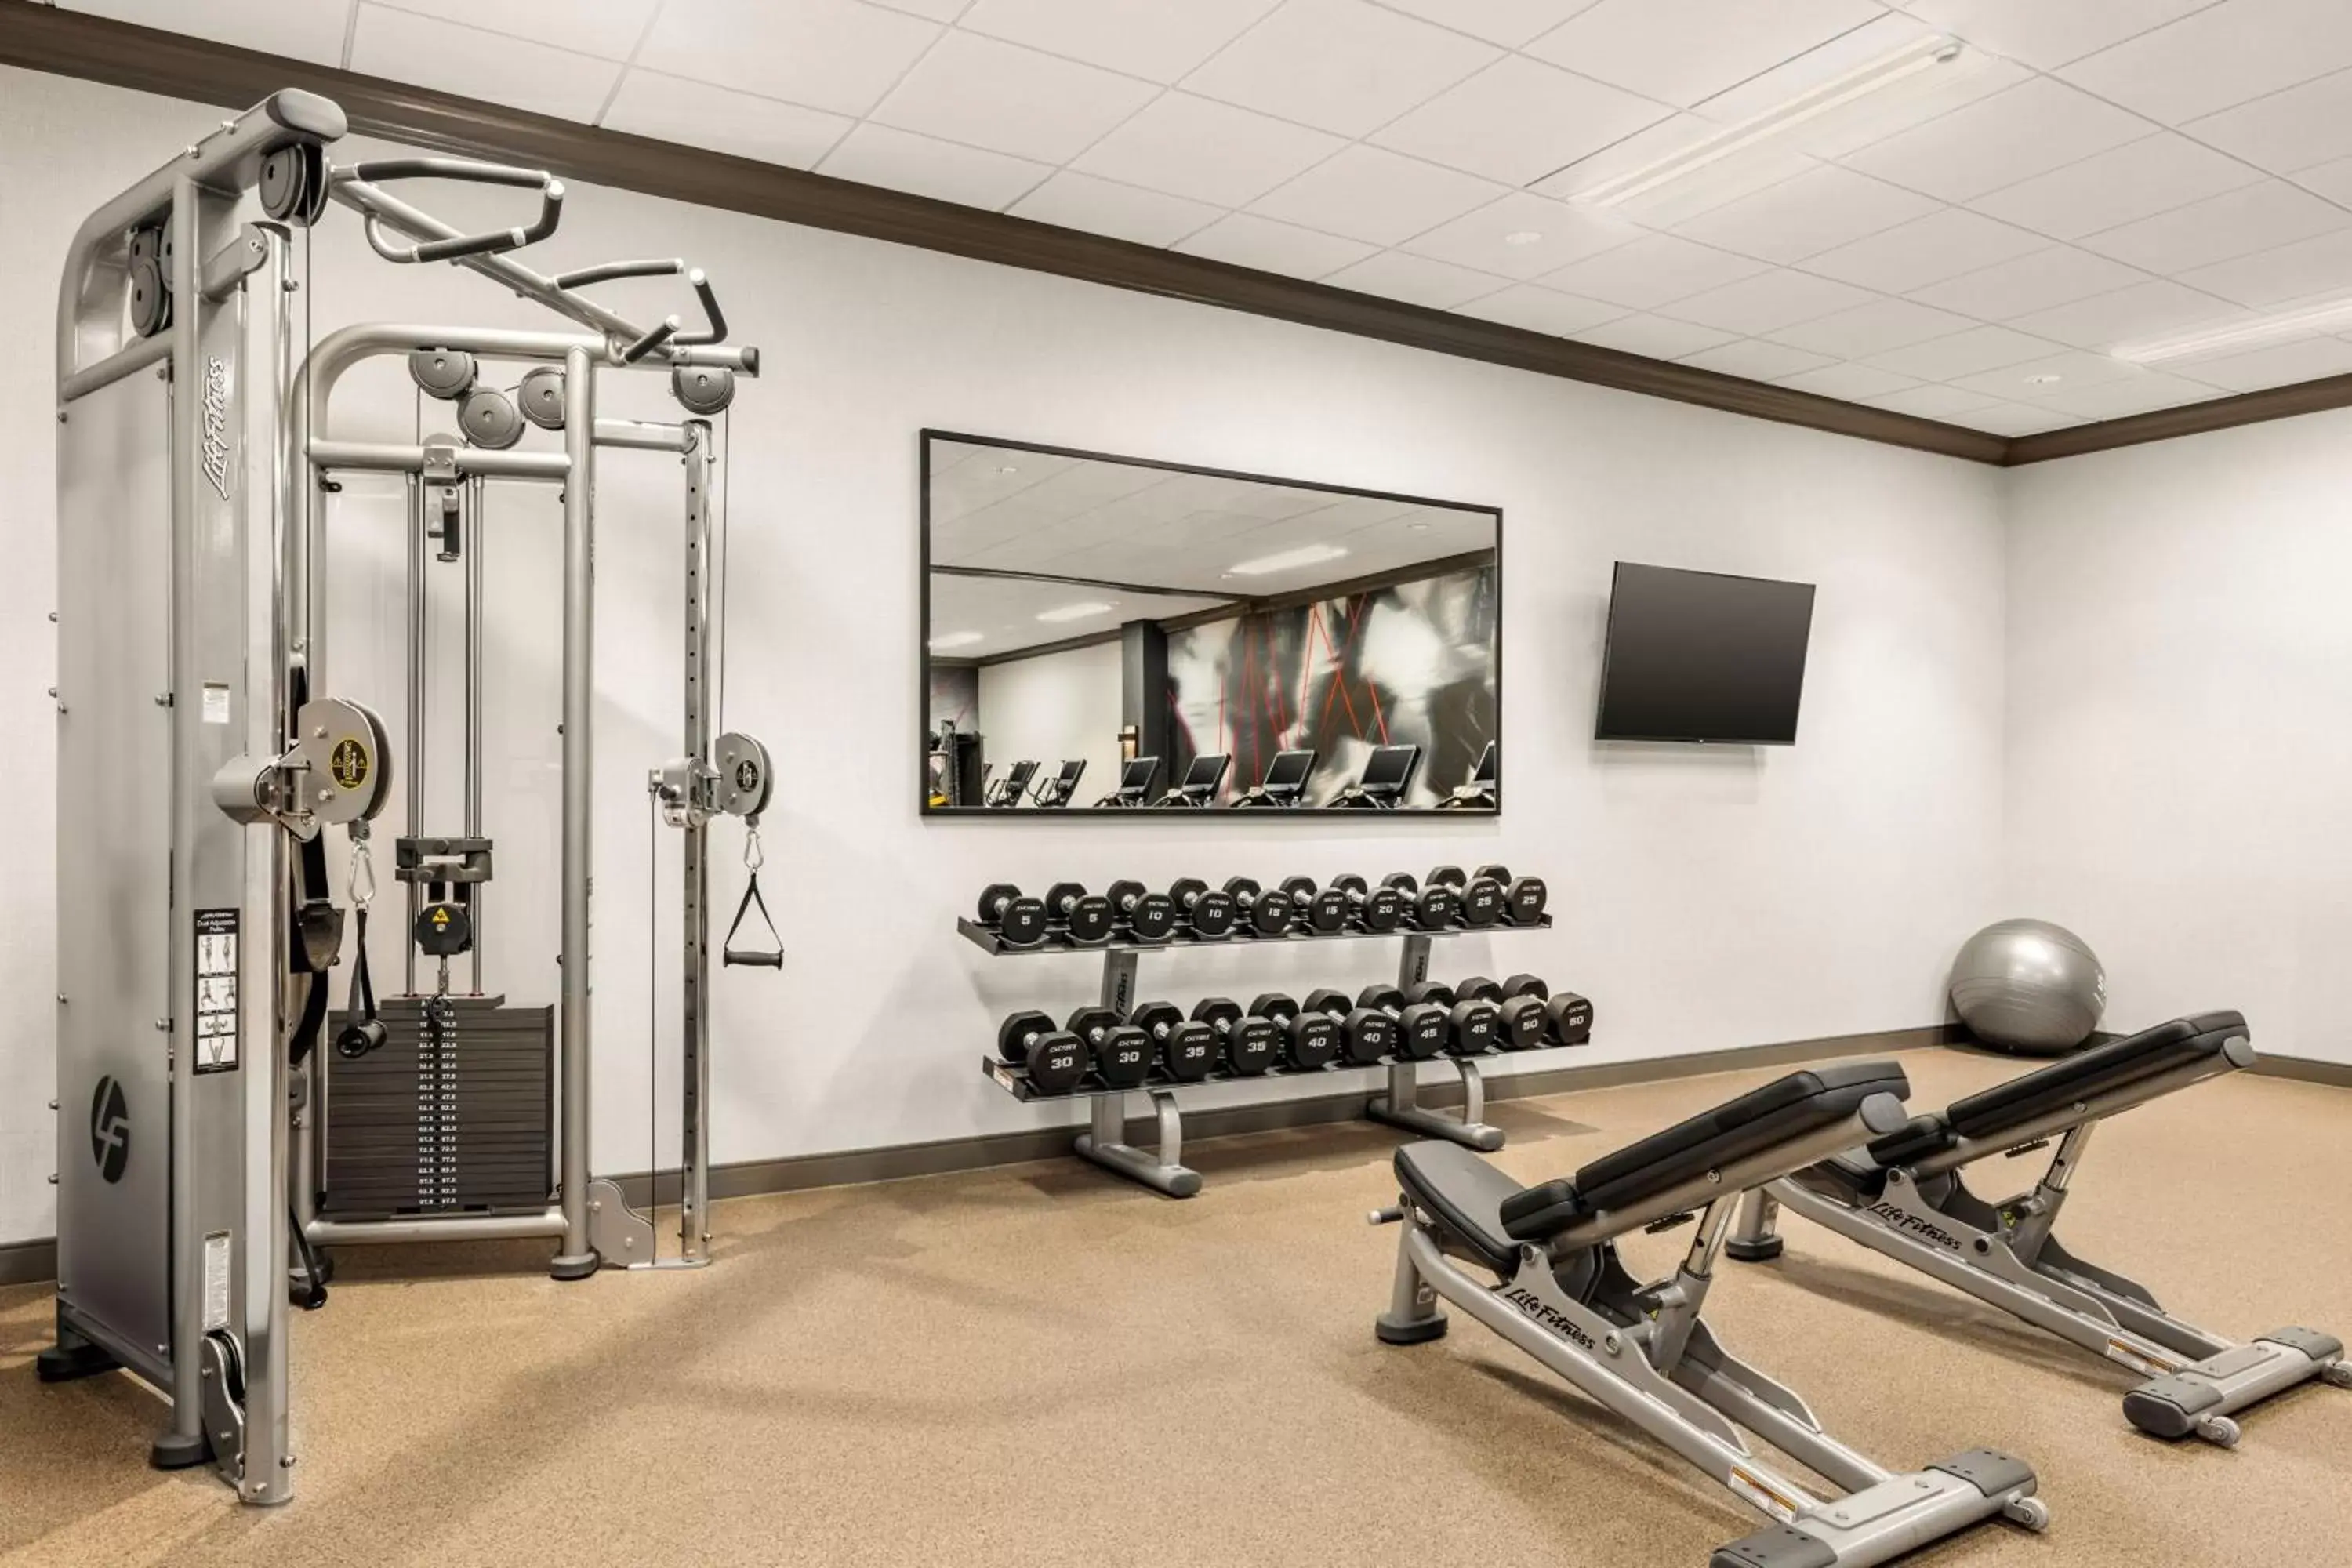 Fitness centre/facilities, Fitness Center/Facilities in Omaha Marriott